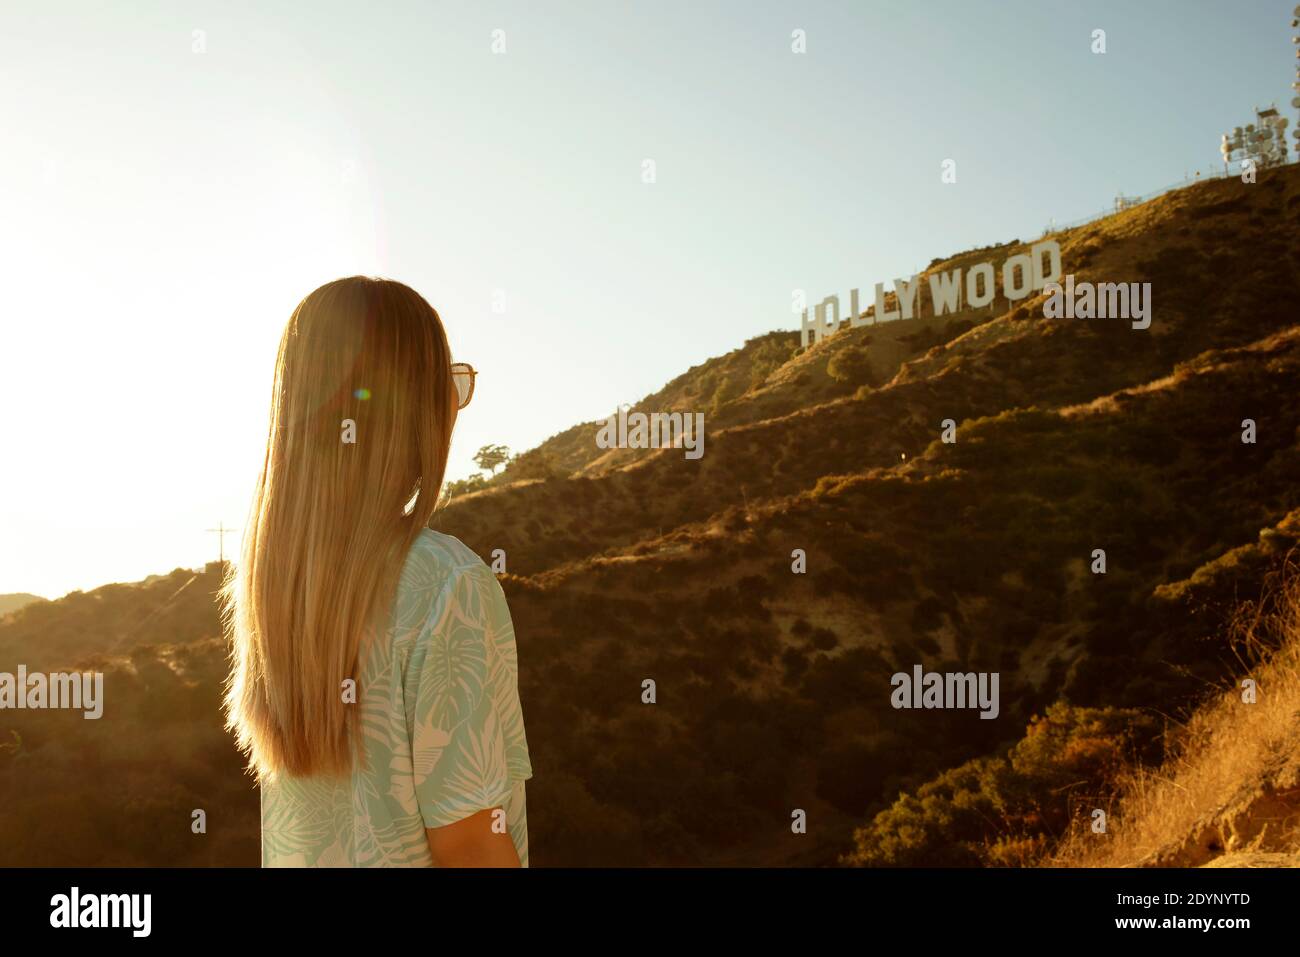 Vue arrière d'une fille regardant le panneau Hollywood, Los Angeles, Californie, États-Unis. Août 2019 Banque D'Images